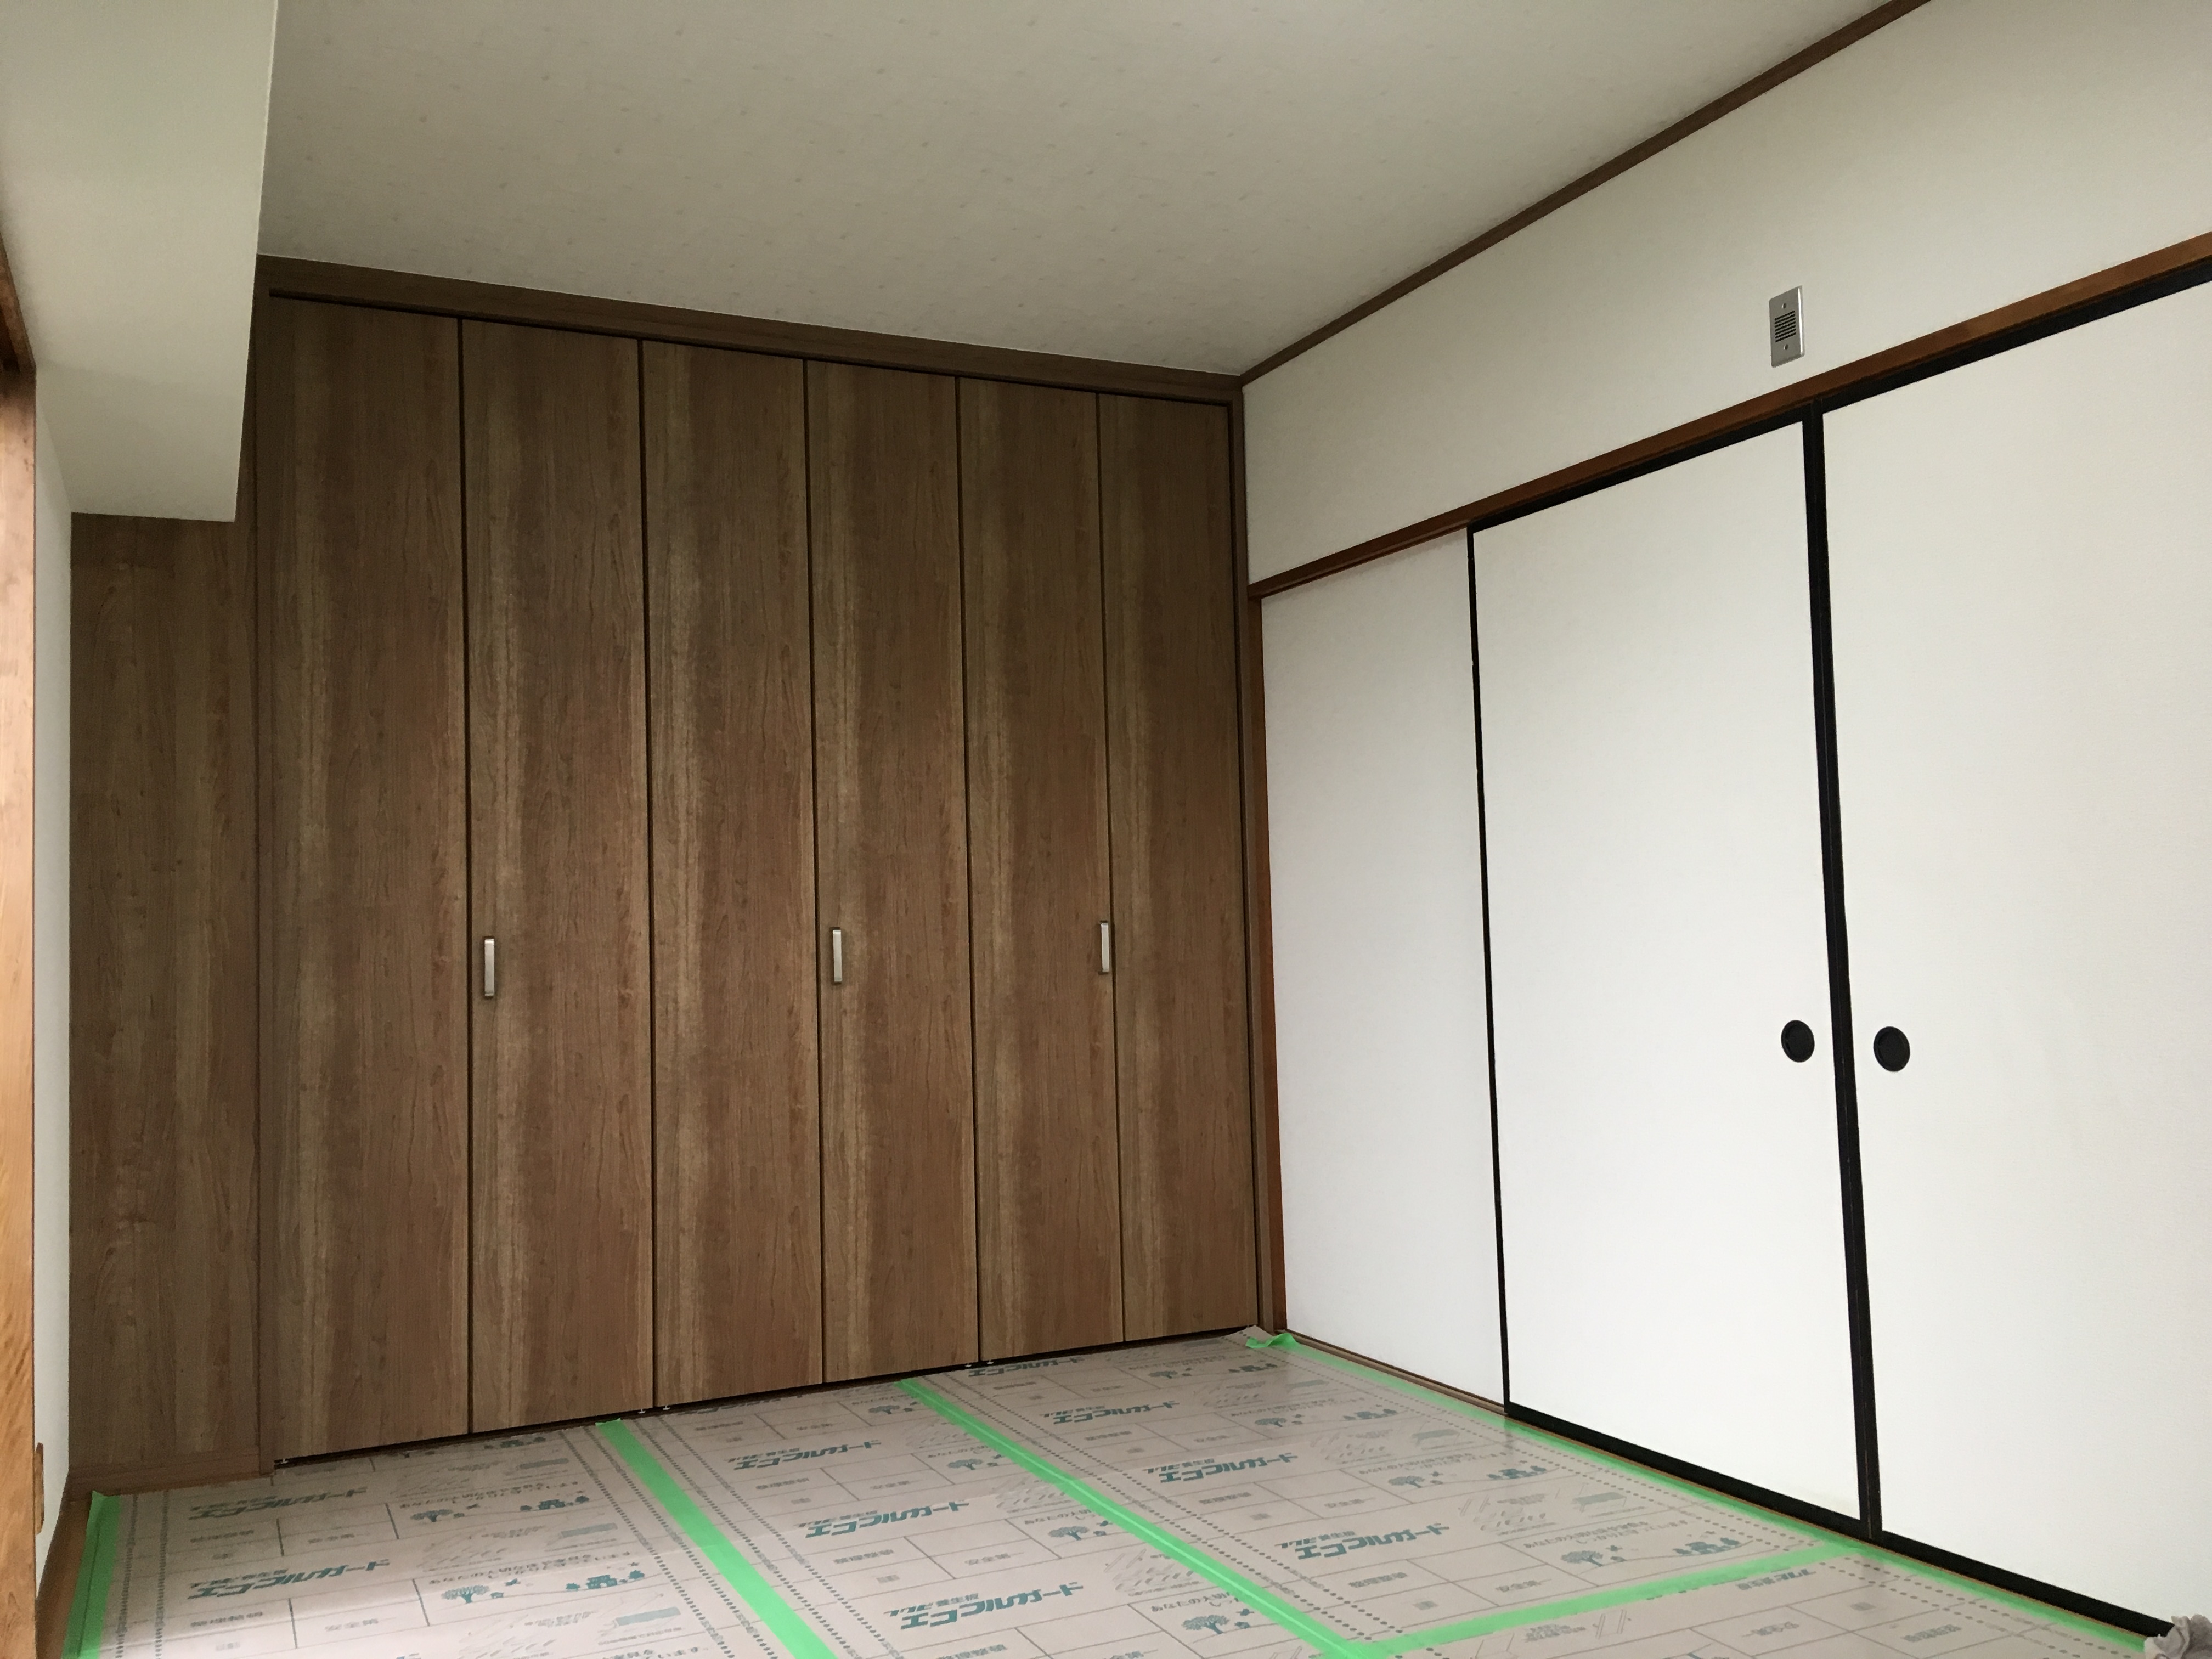 和室の改装 名古屋市で新築 リフォーム リノベーションなら雅の家